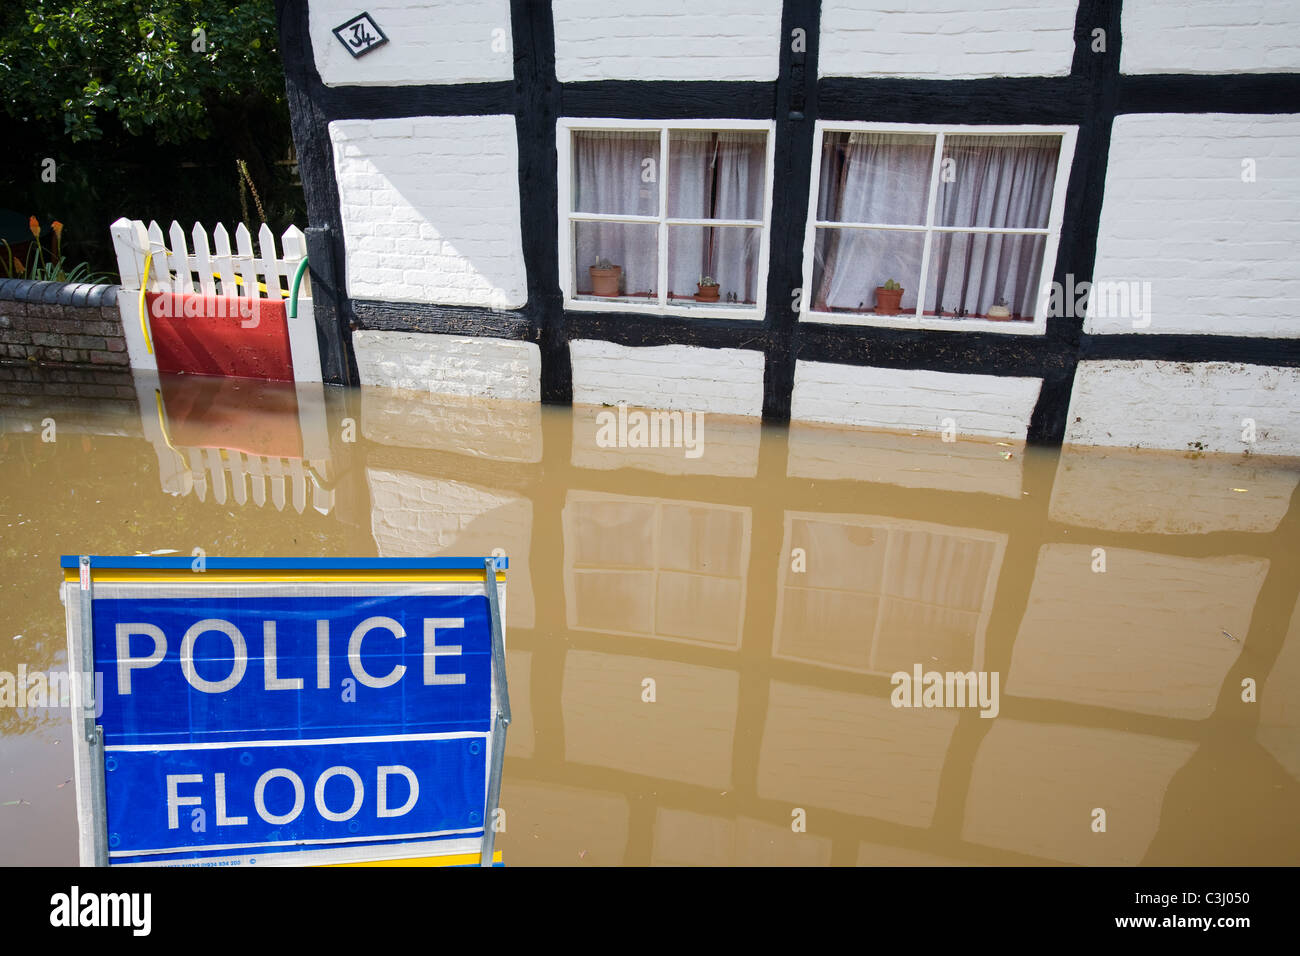 Flooding in Tewkesbury, UK. Stock Photo